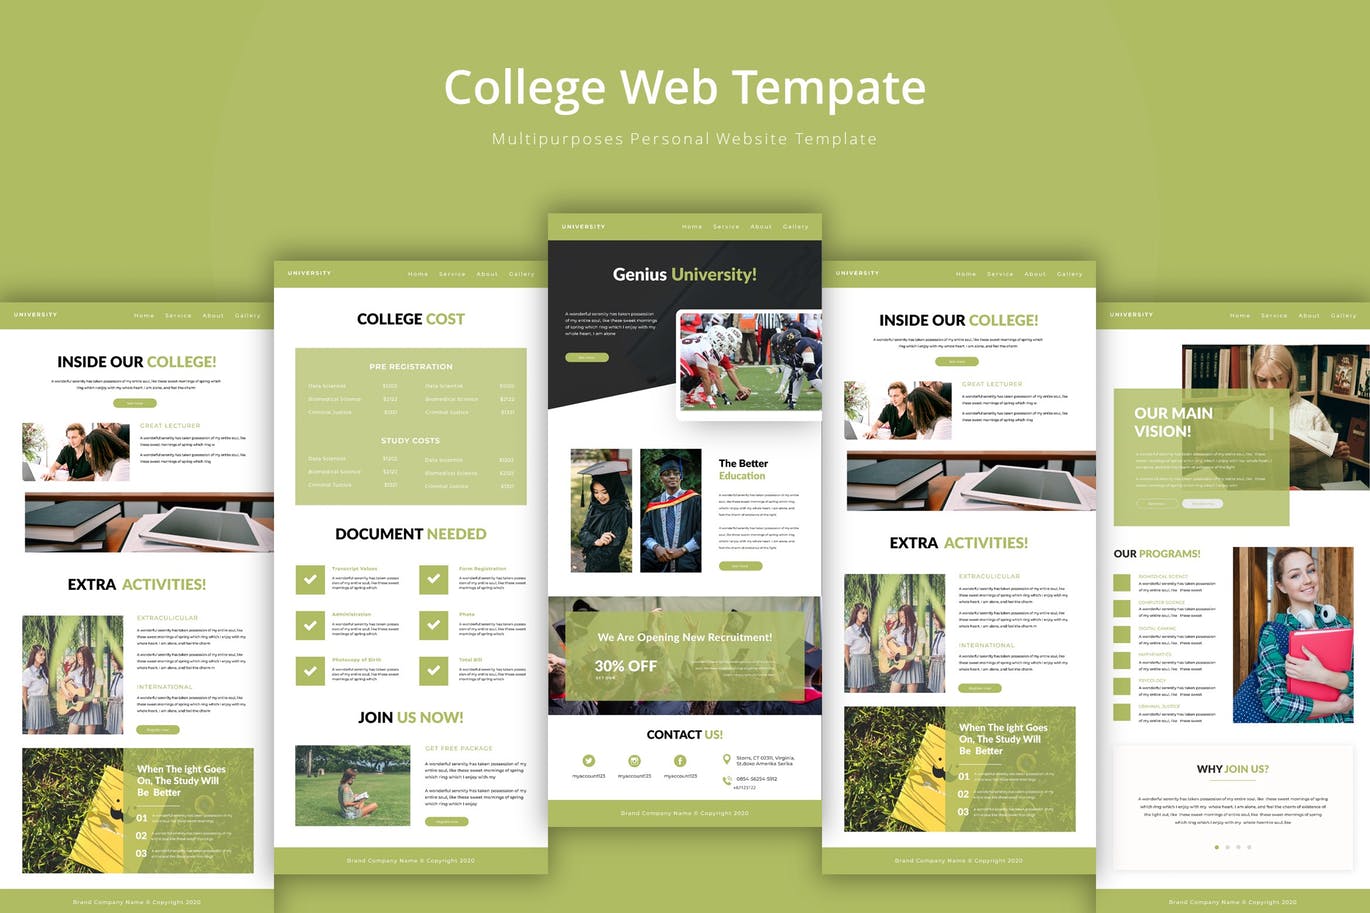 大学/学院教育网站设计16图库精选模板 University Web Template插图